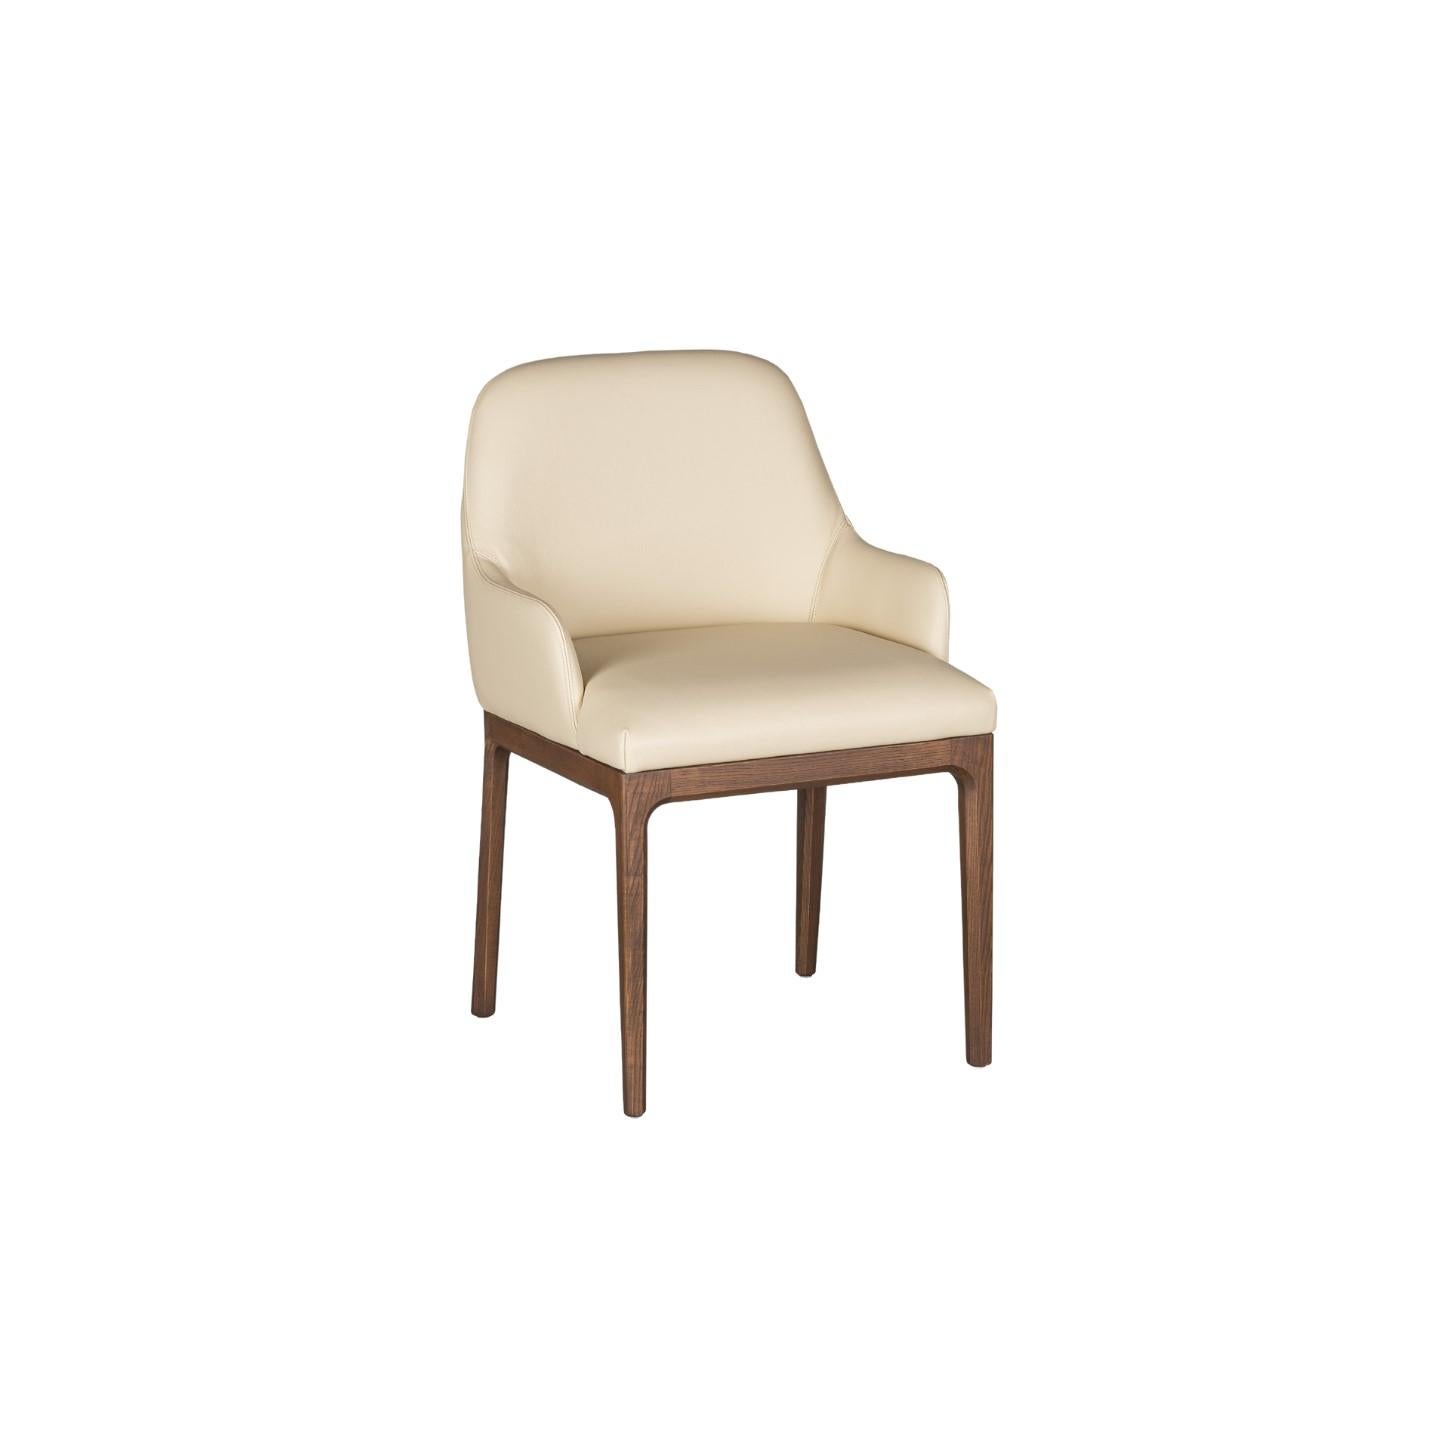 Bellagio Sessel im zeitgenössischen Stil aus Eschenholz mit gepolstertem Sitz aus Leder oder Stoff.
Entwurf Libero Rutilo